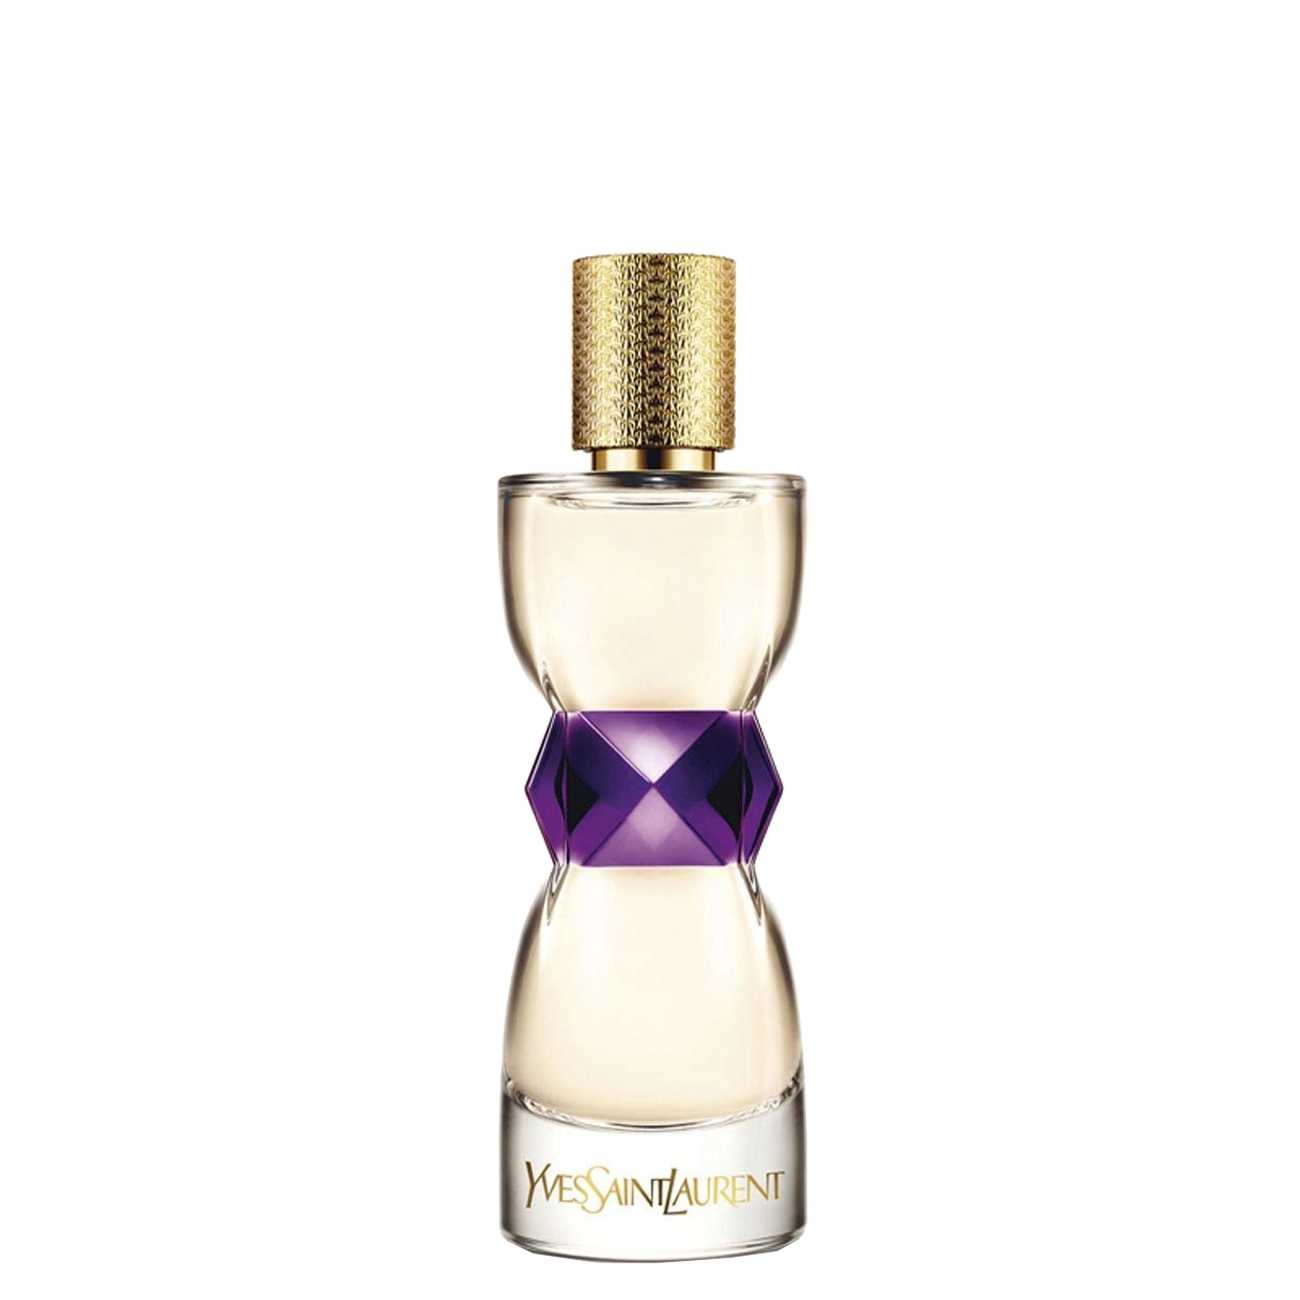 Apa de Parfum Yves Saint Laurent MANIFESTO 50ml cu comanda online